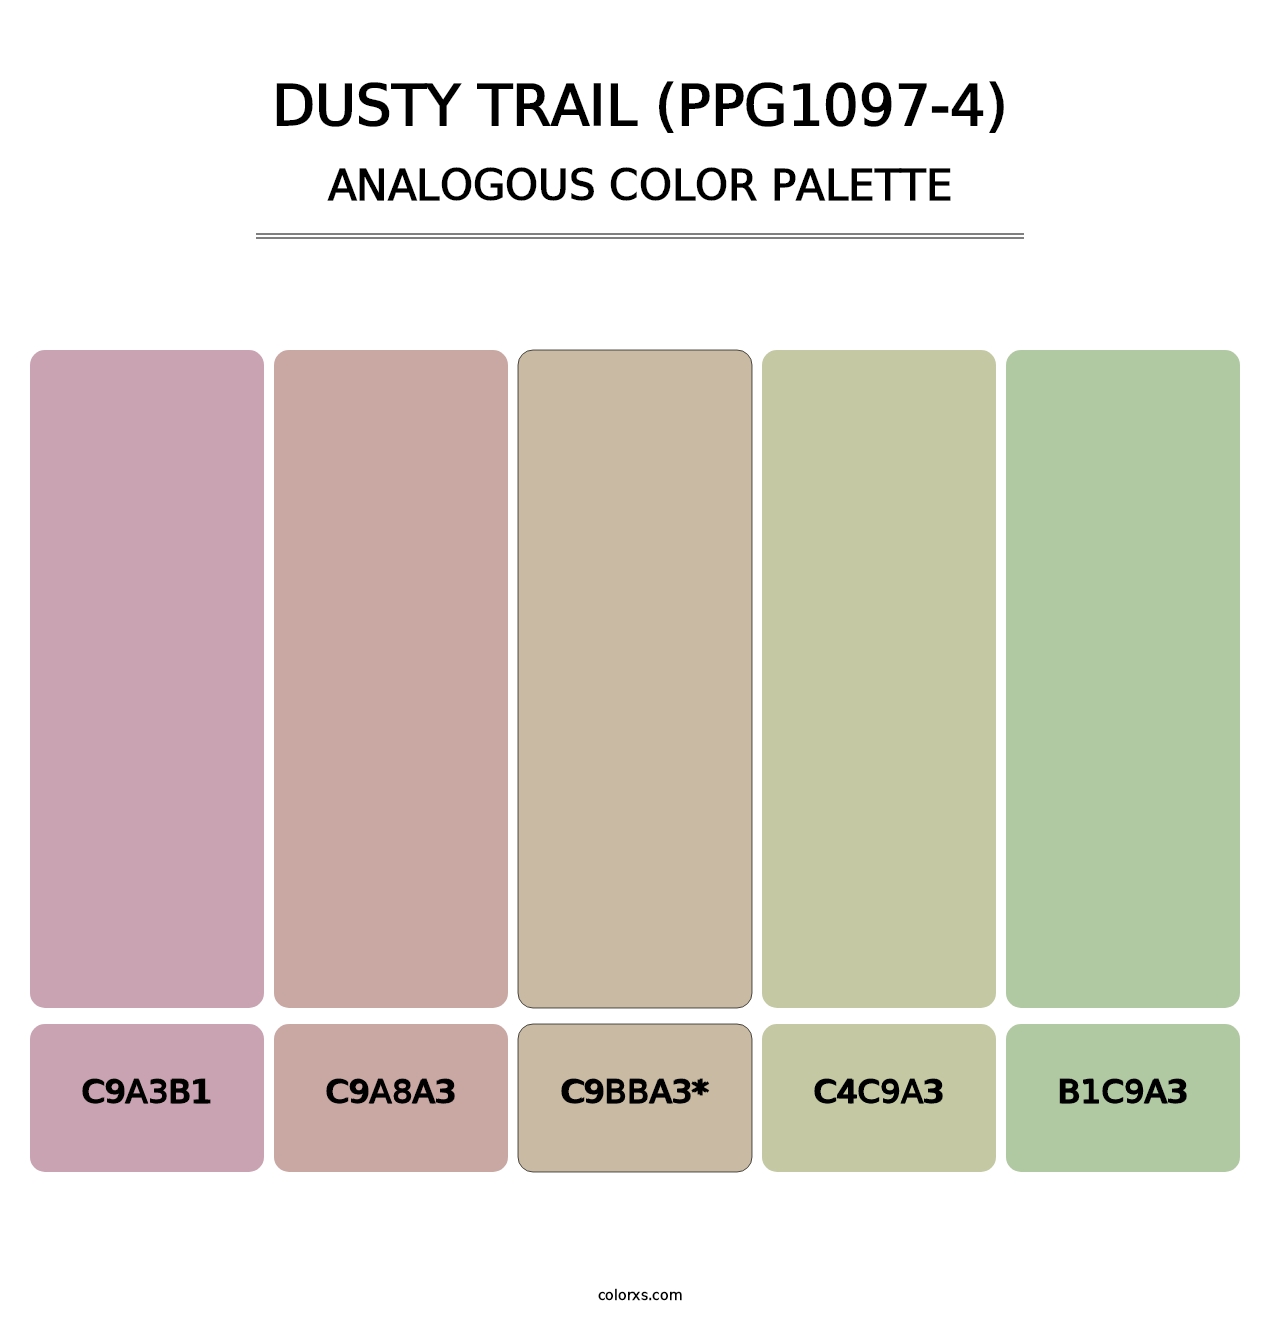 Dusty Trail (PPG1097-4) - Analogous Color Palette